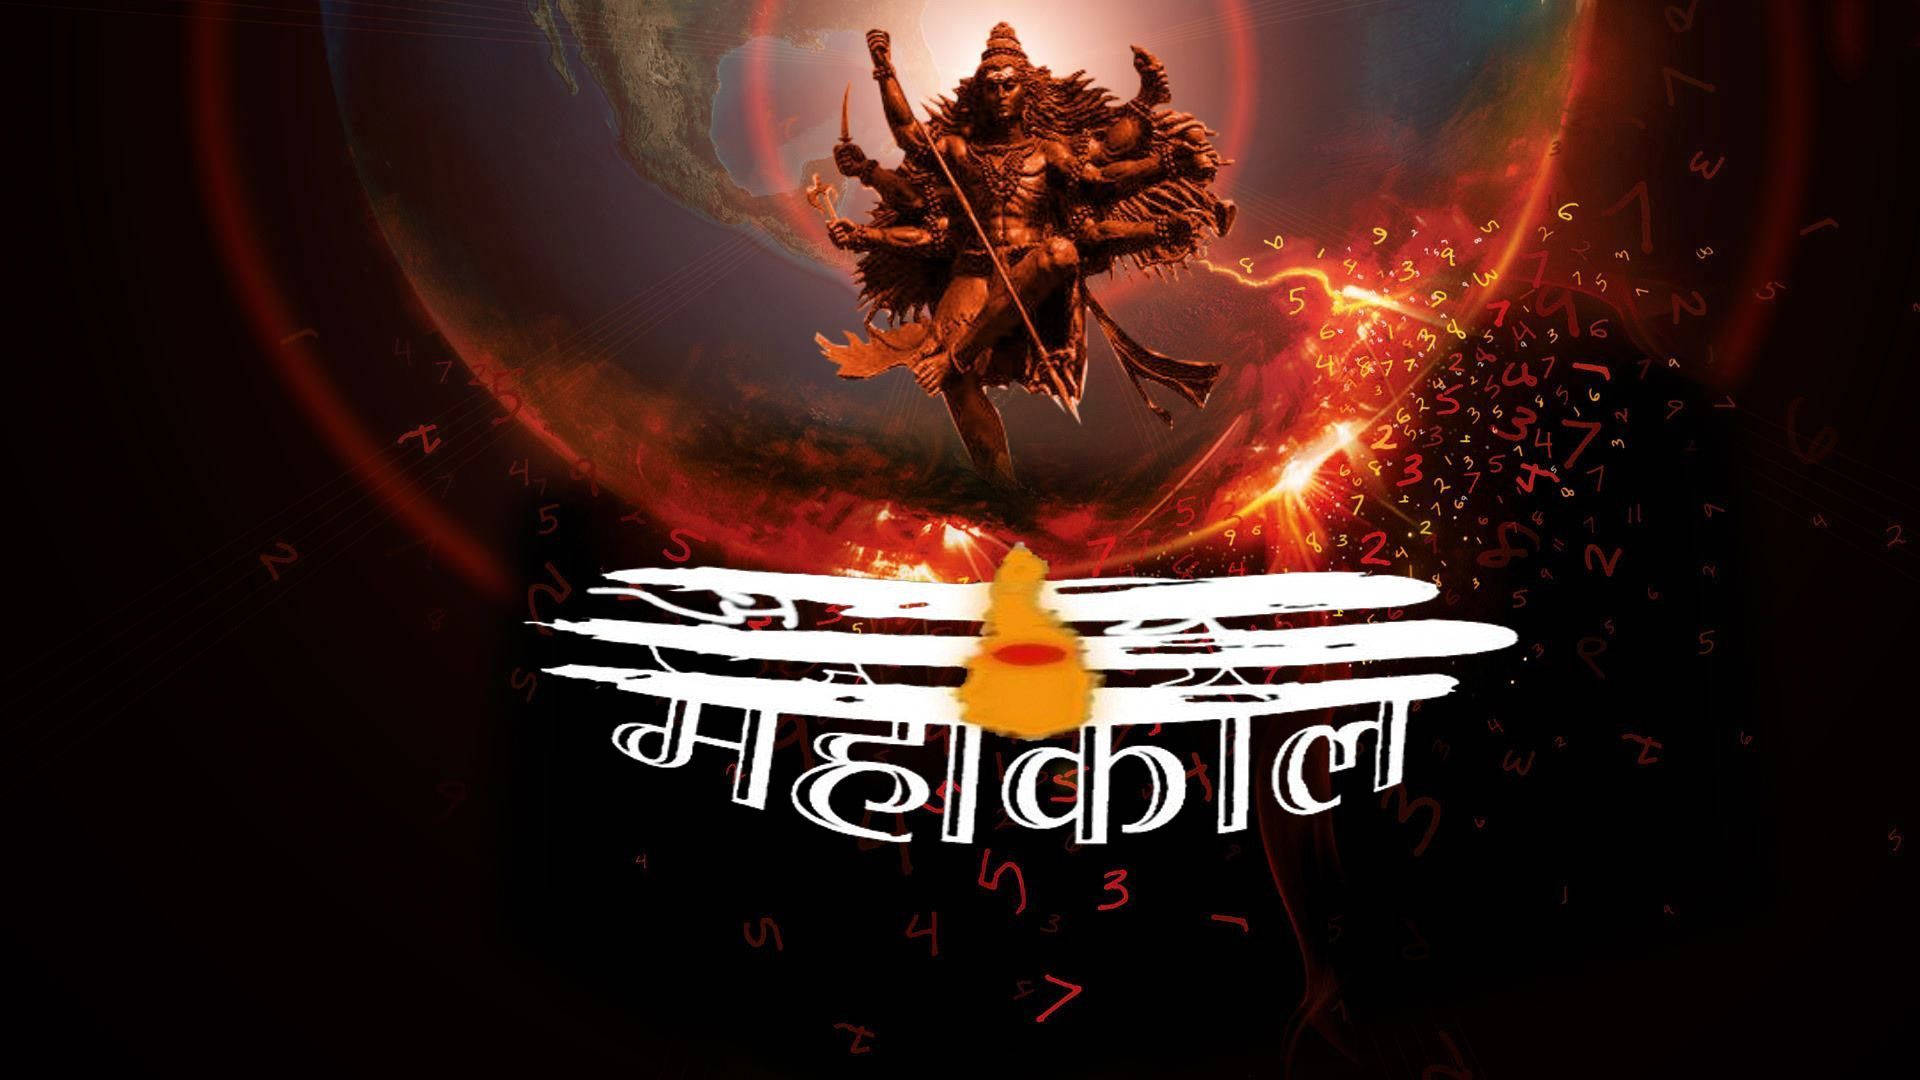 Oscuraimagen De Mahadev Con Seis Brazos Y Texto En Hindi. Fondo de pantalla